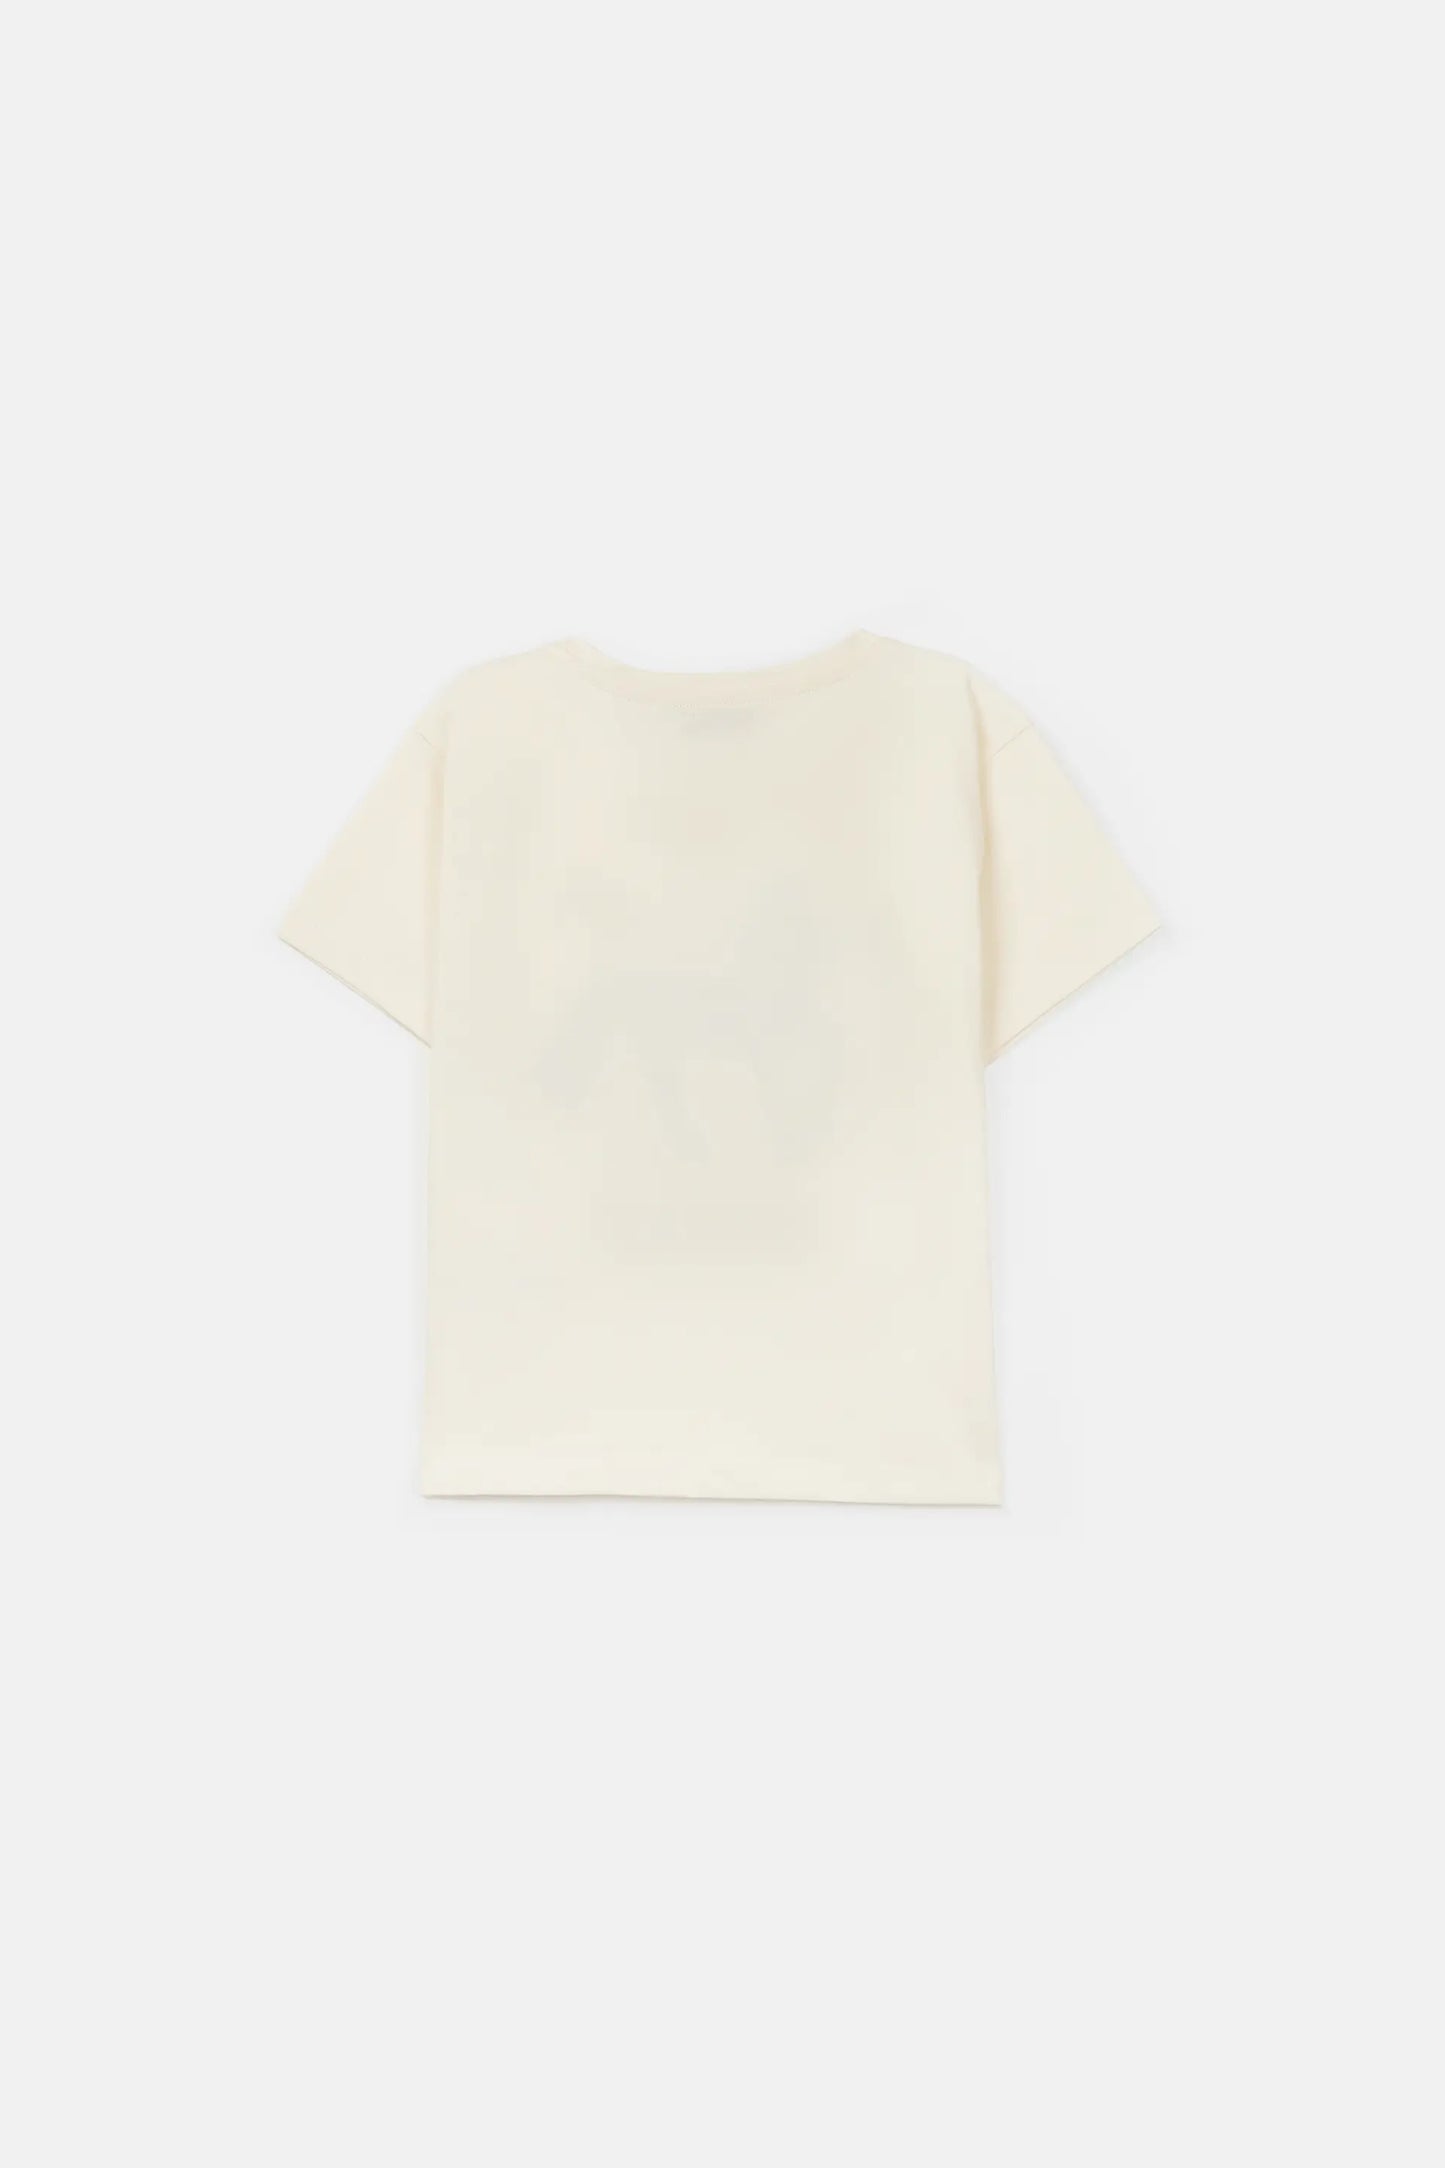 Camiseta unisex de algodón con gráfica de caballo